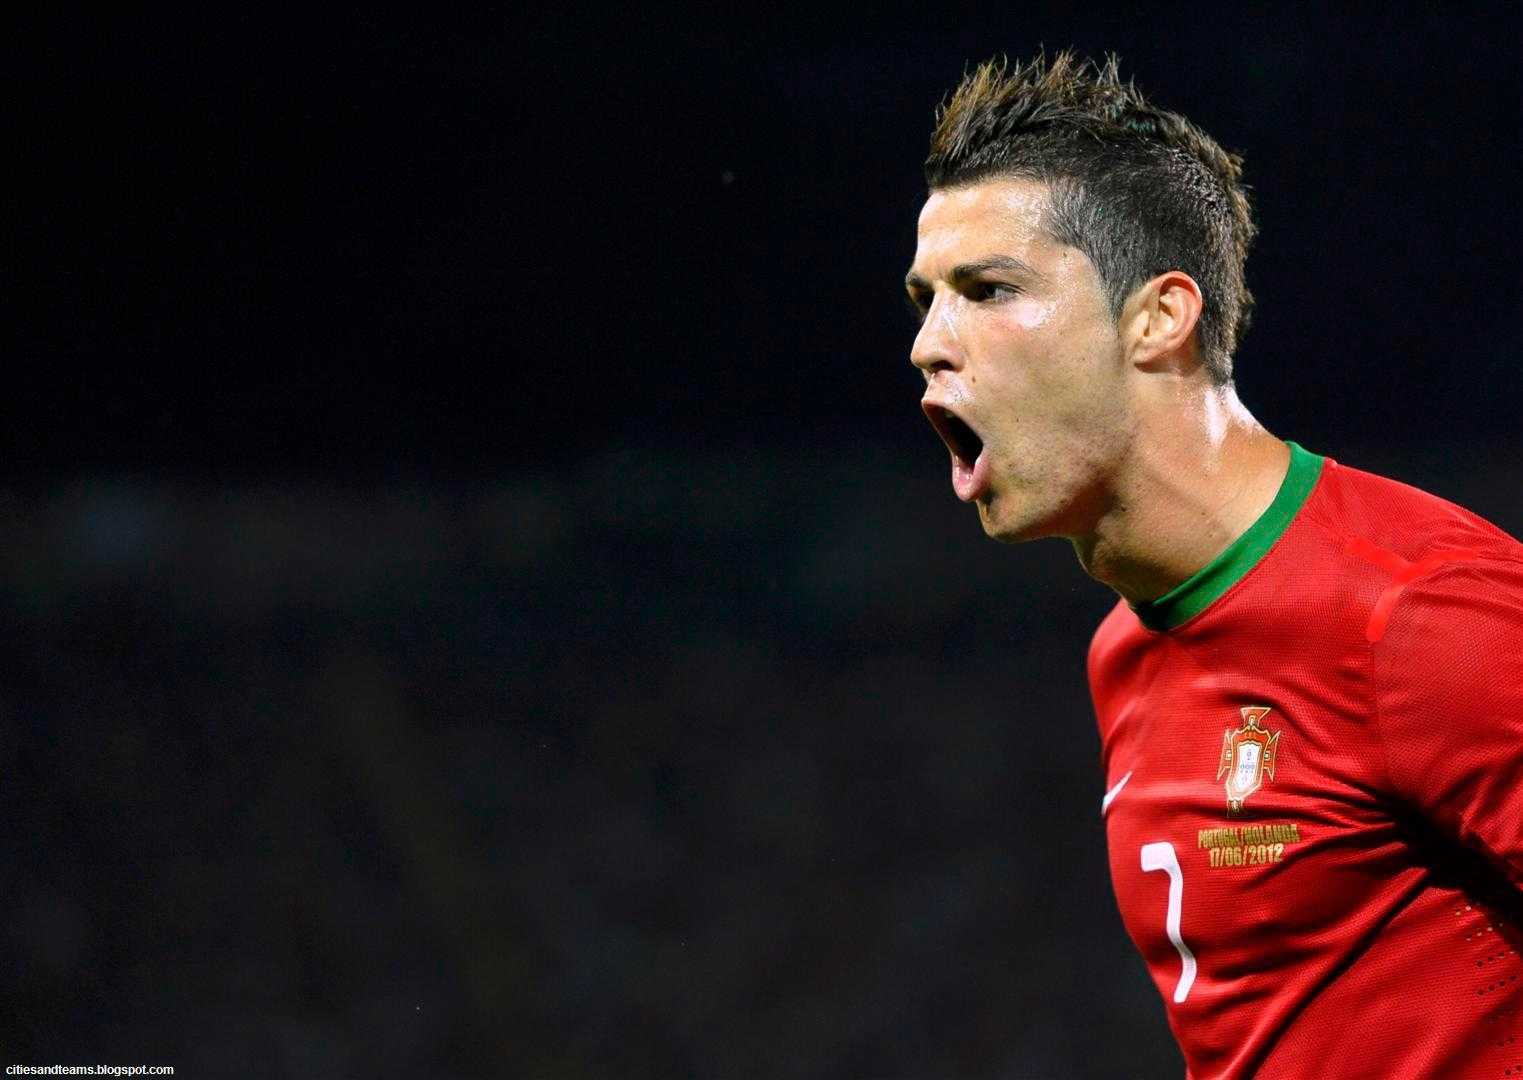 Cristiano Ronaldo Portugal Wallpapers - Wallpaper Cave